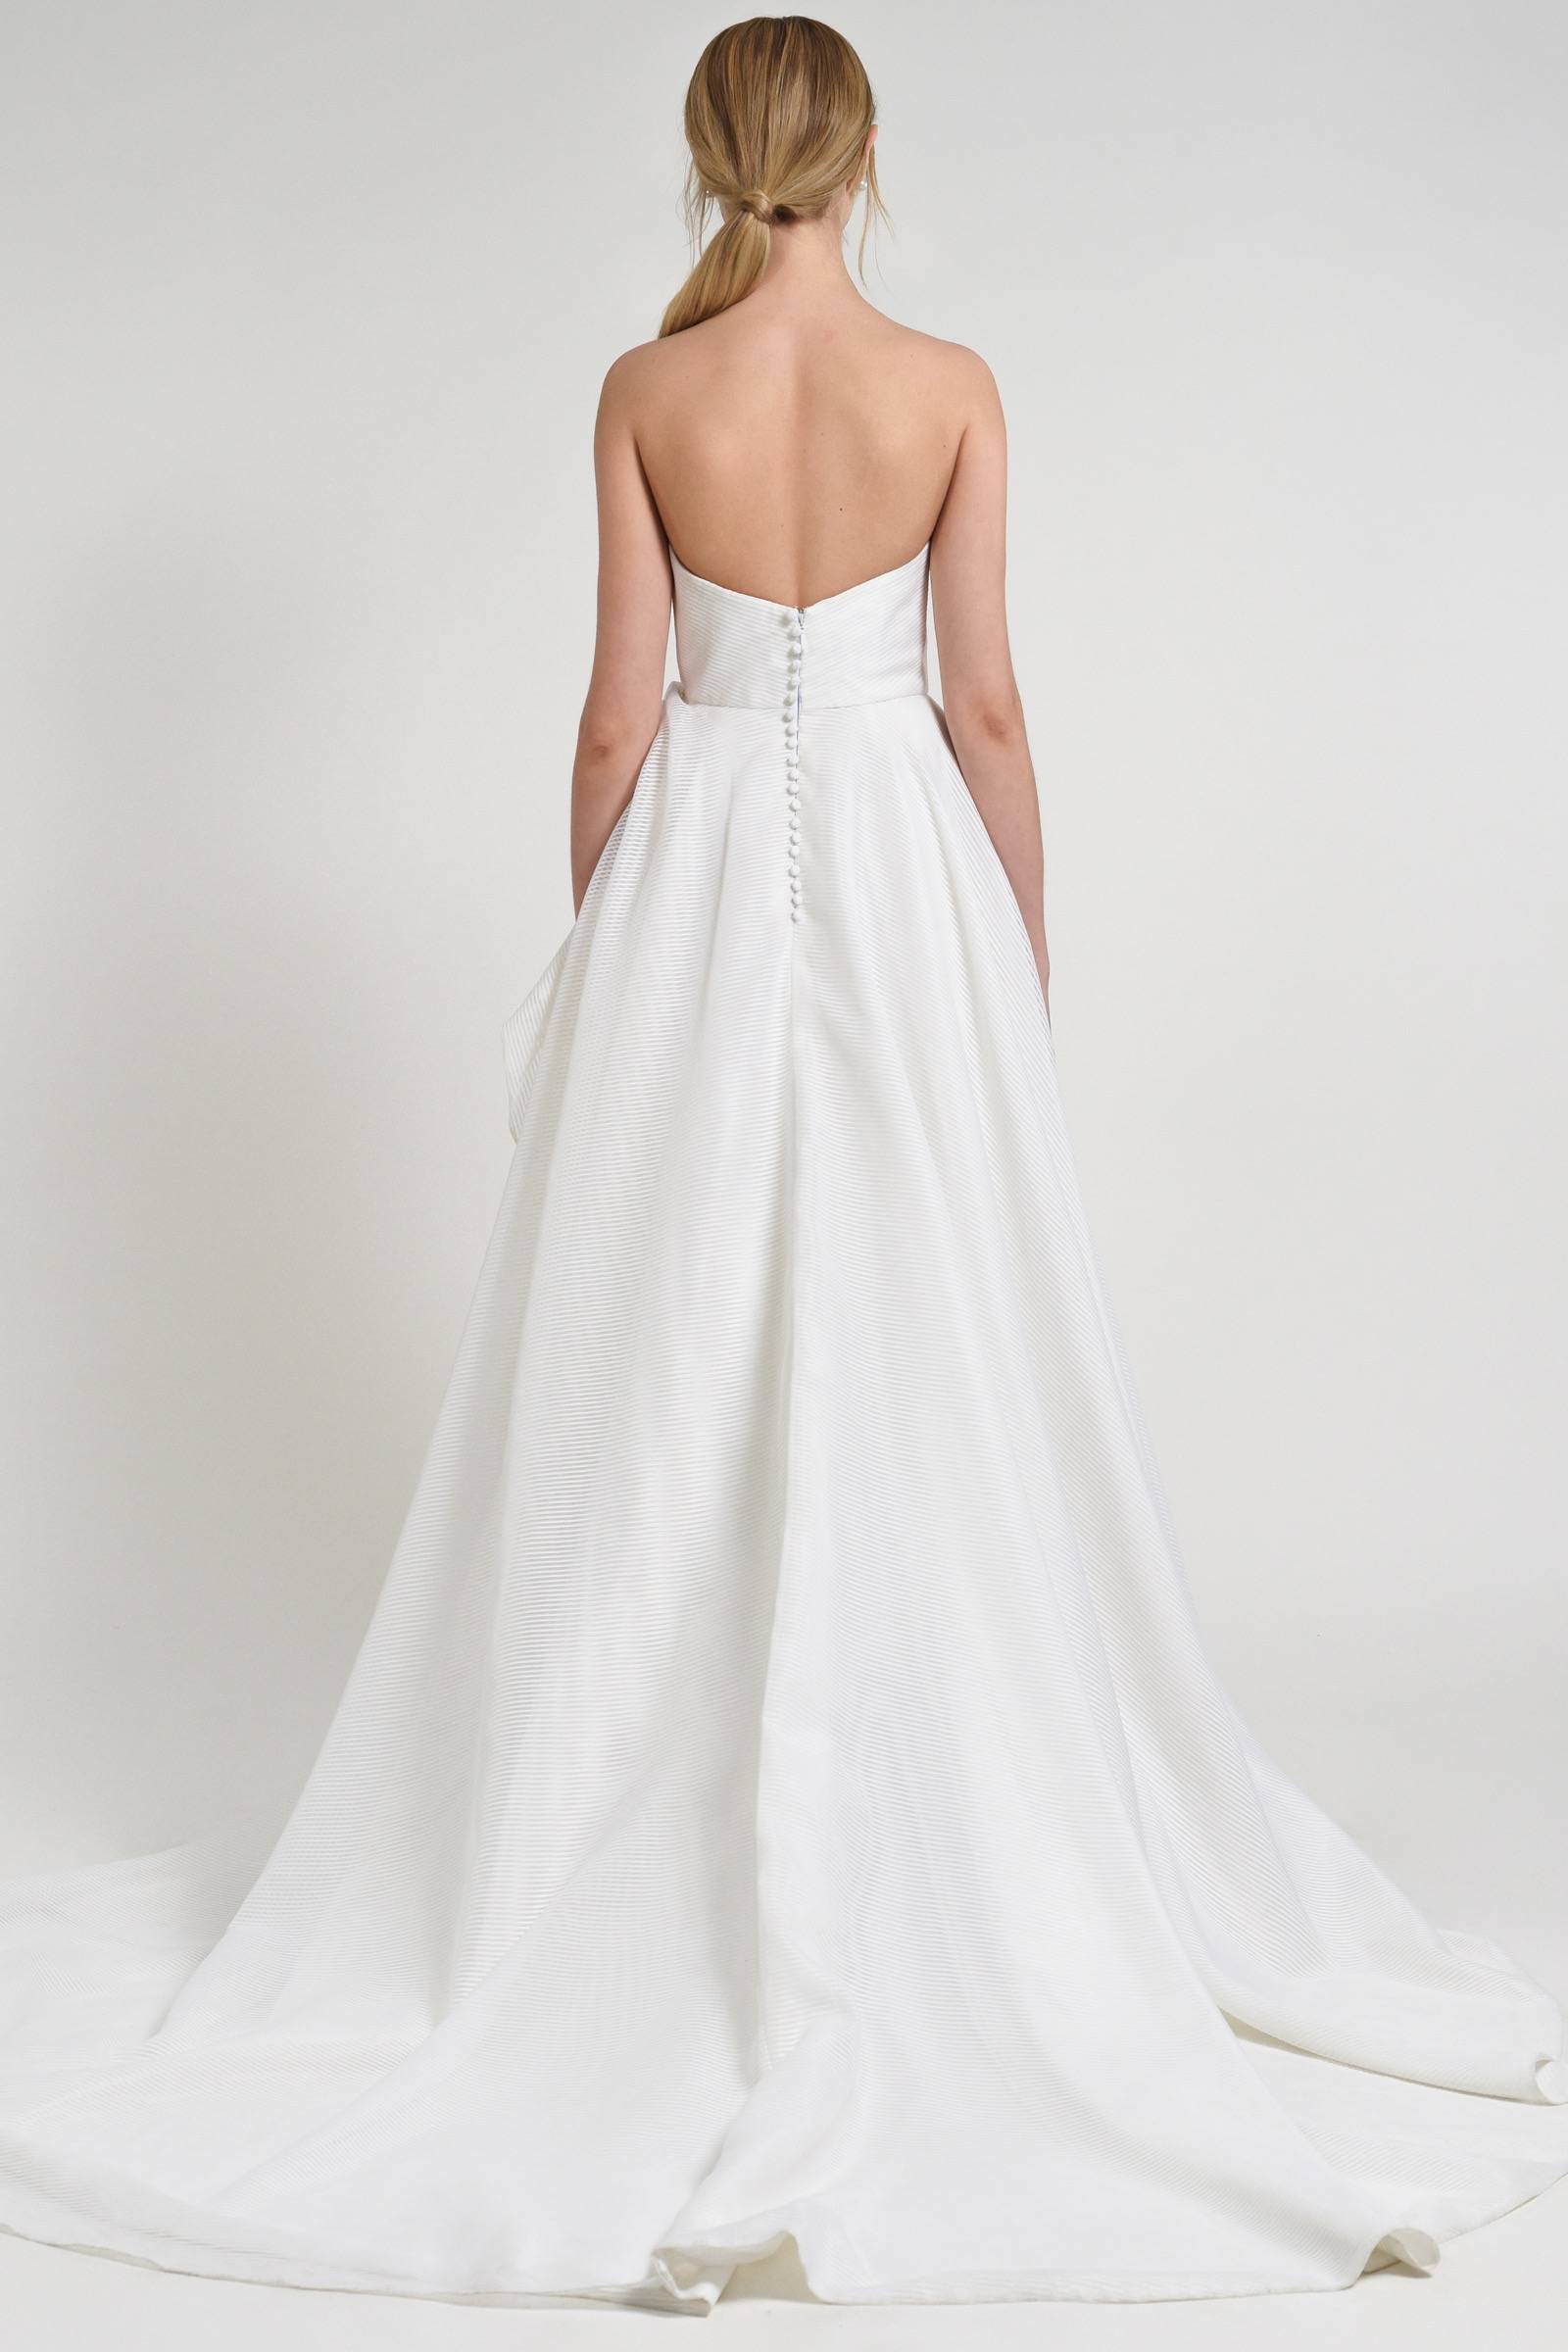 Minimalist wedding gowns by Jenny Yoo